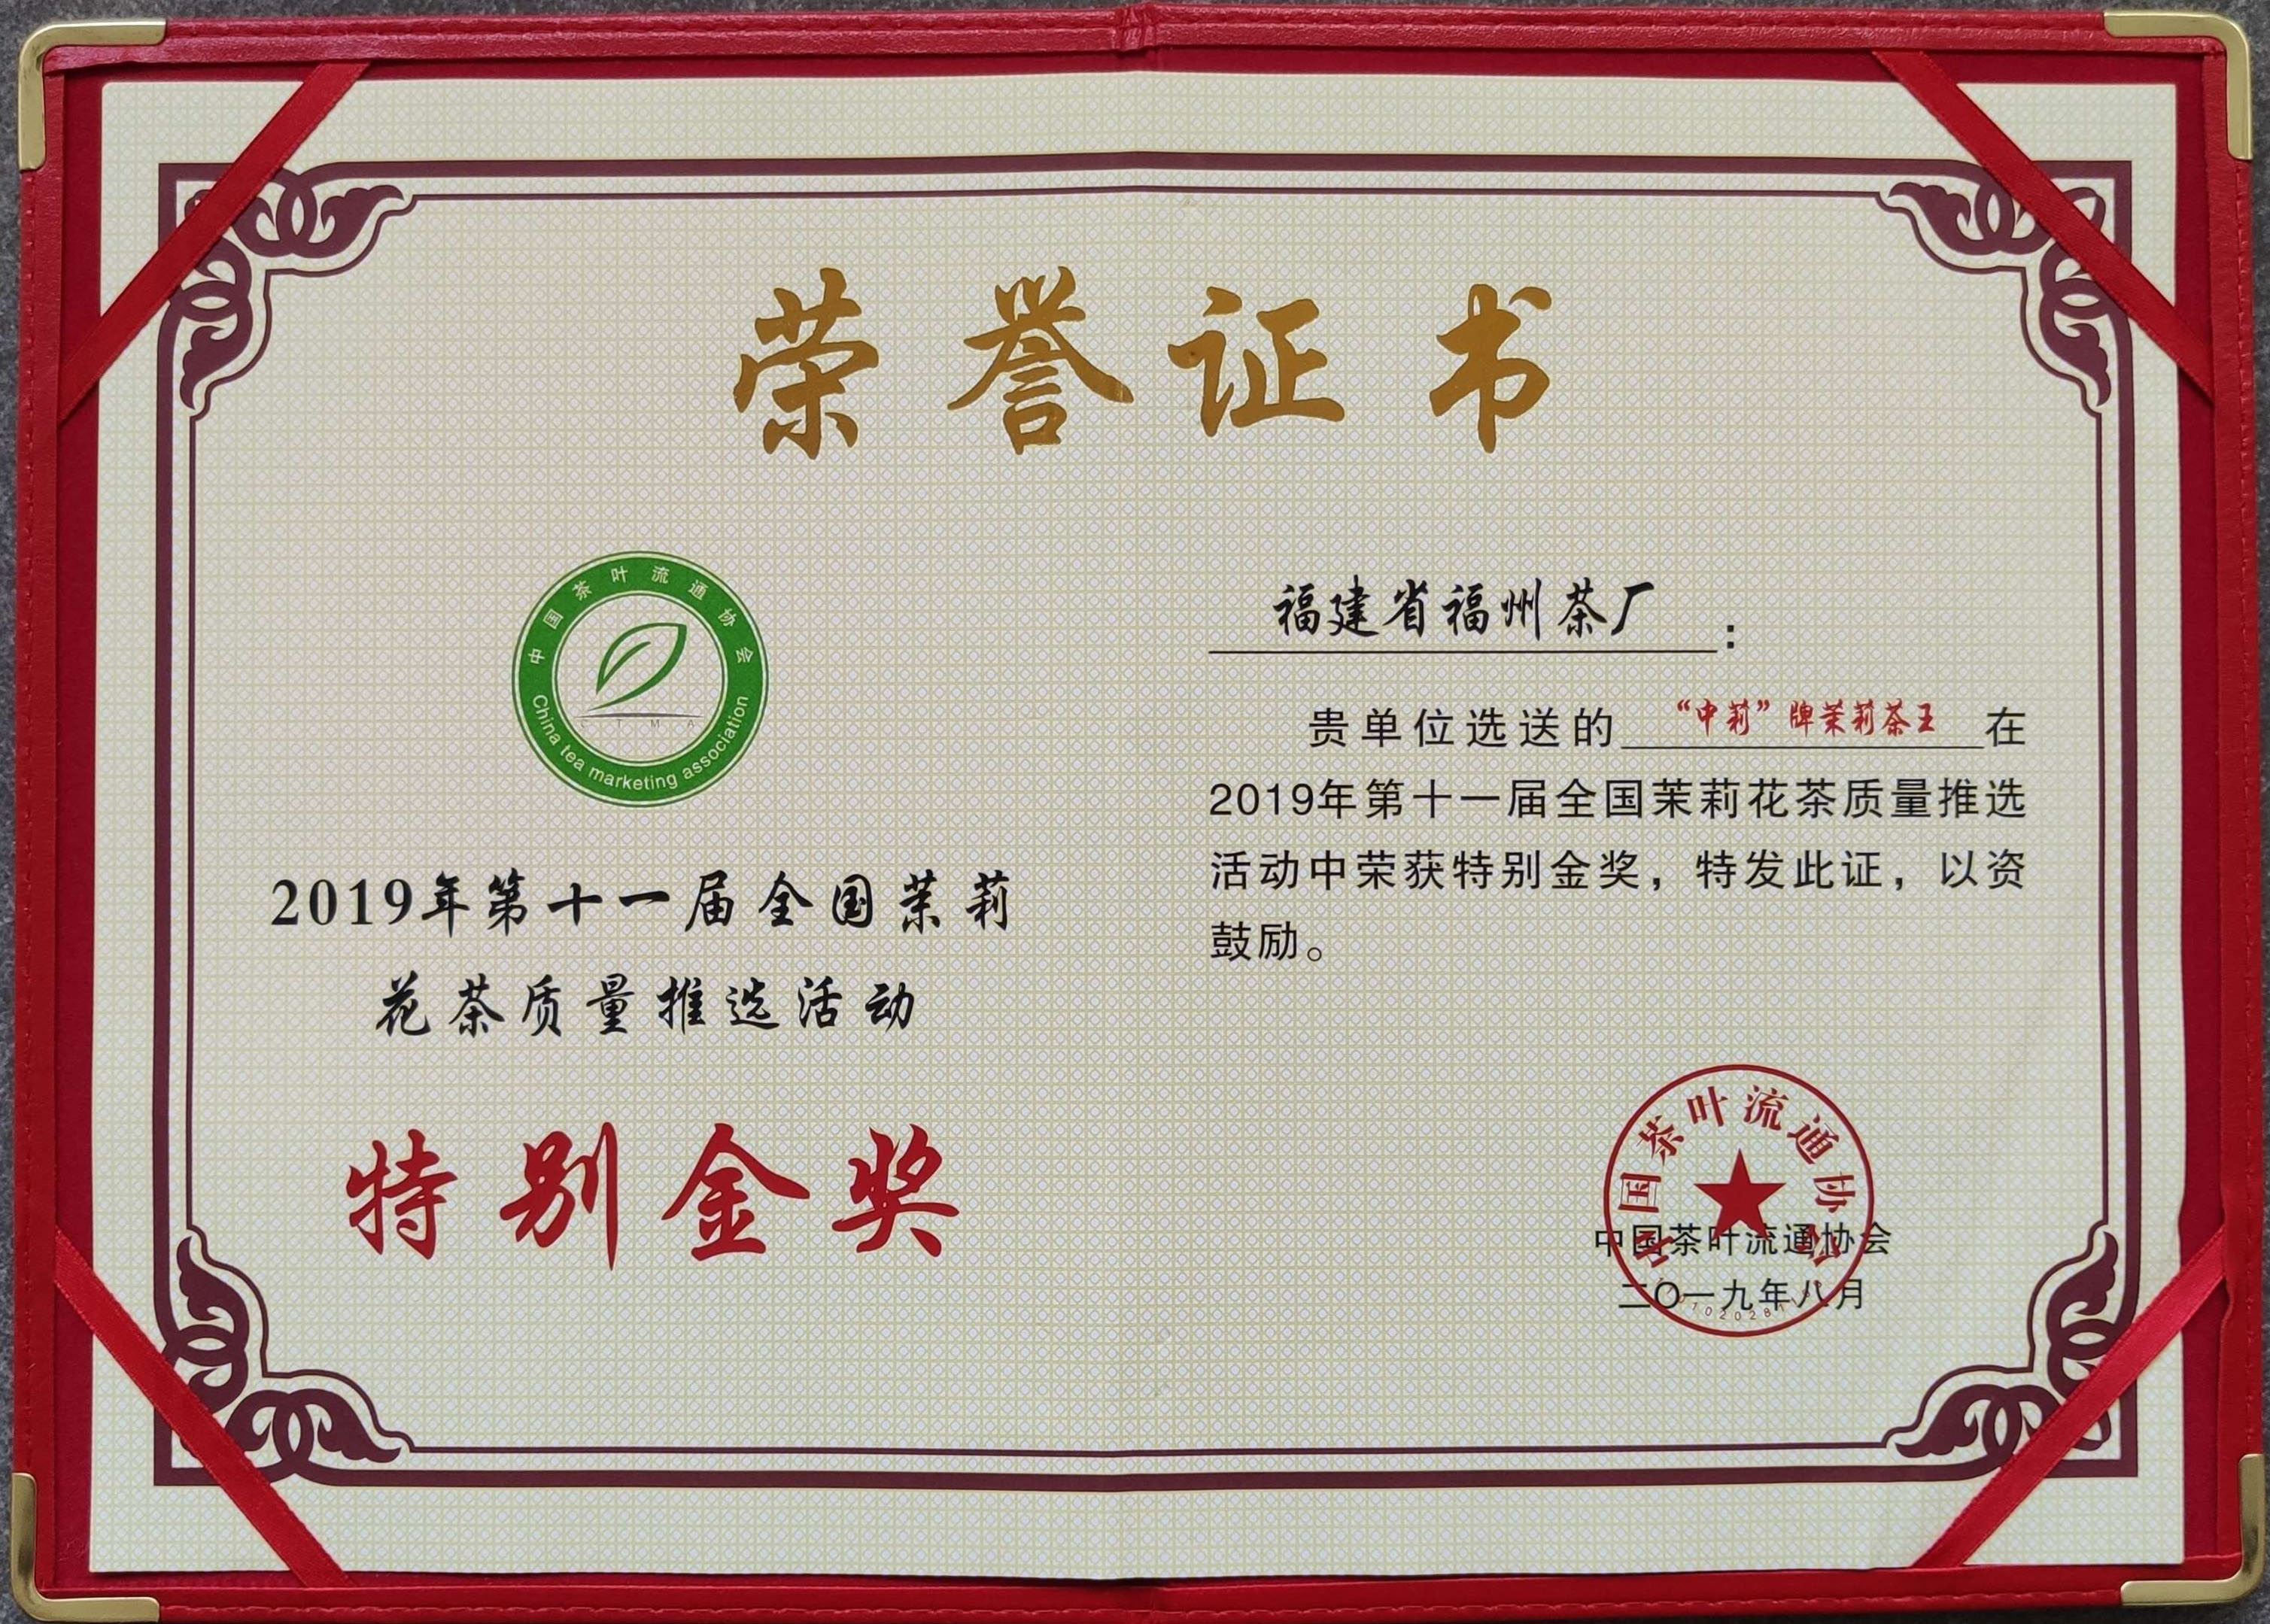 福州茶厂茉莉茶王荣获第11届全国茉莉花茶质量推选特别金奖